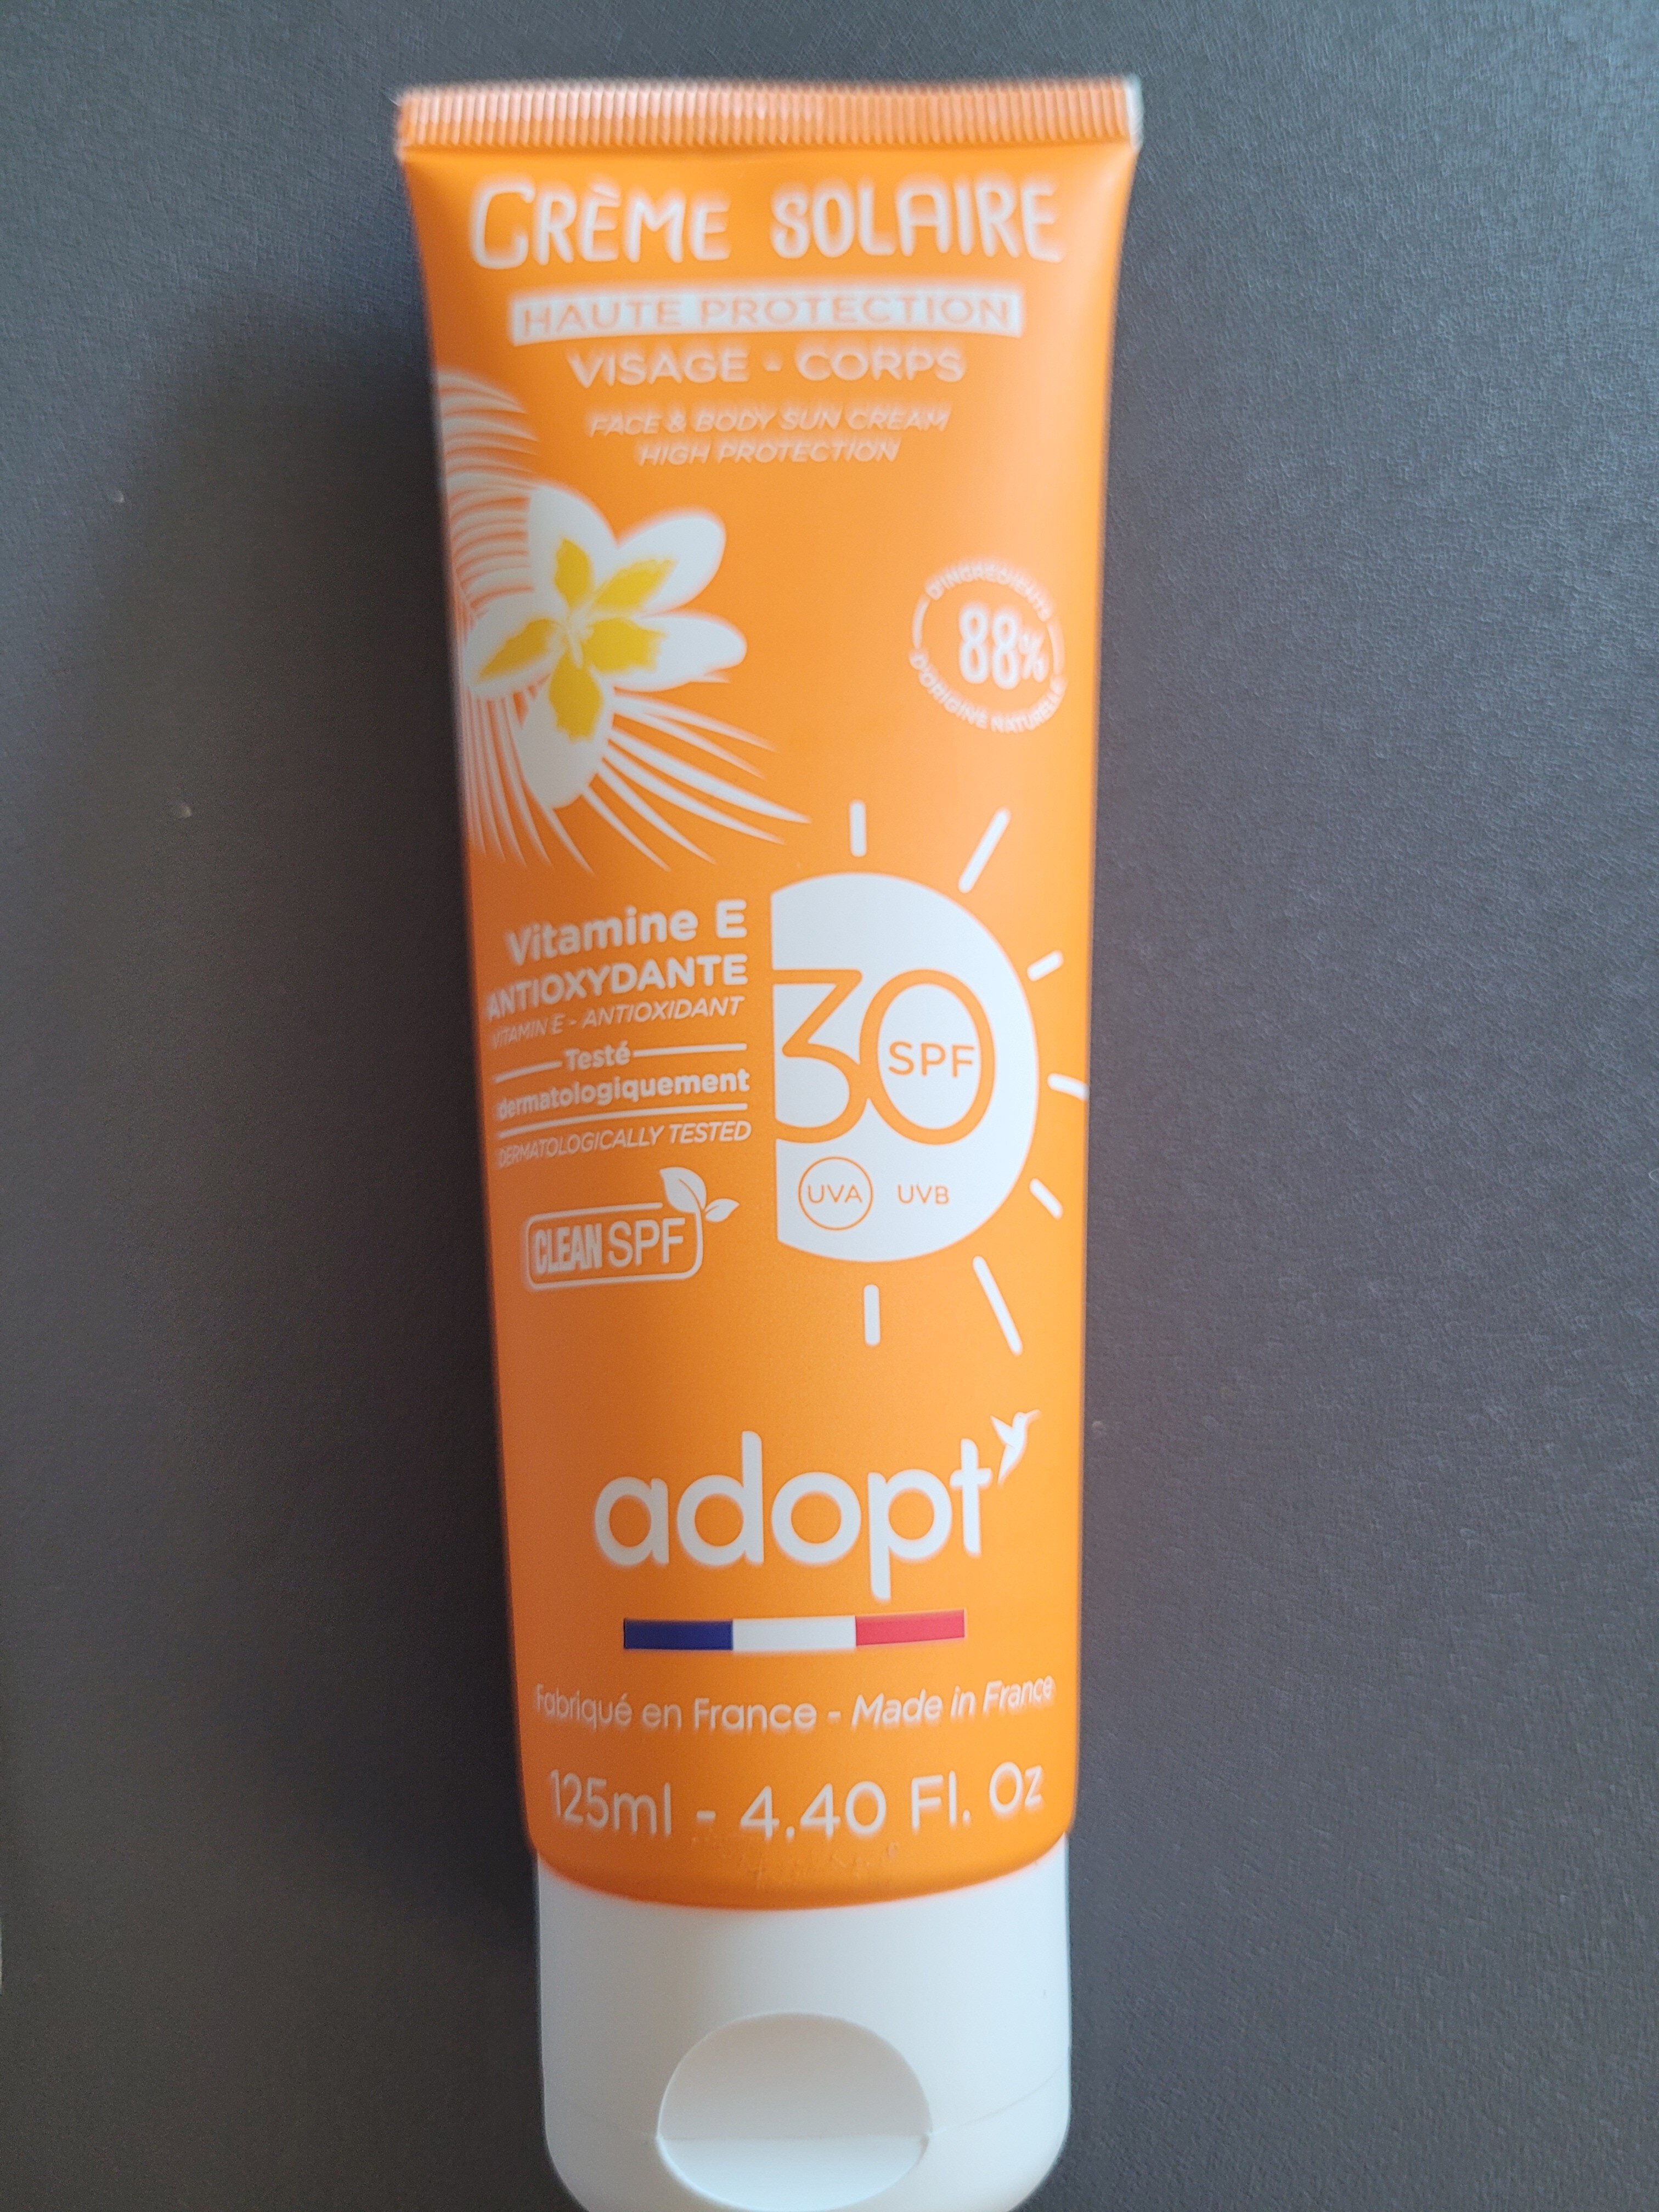 crème solaire - haute protection visage - corps - Product - fr